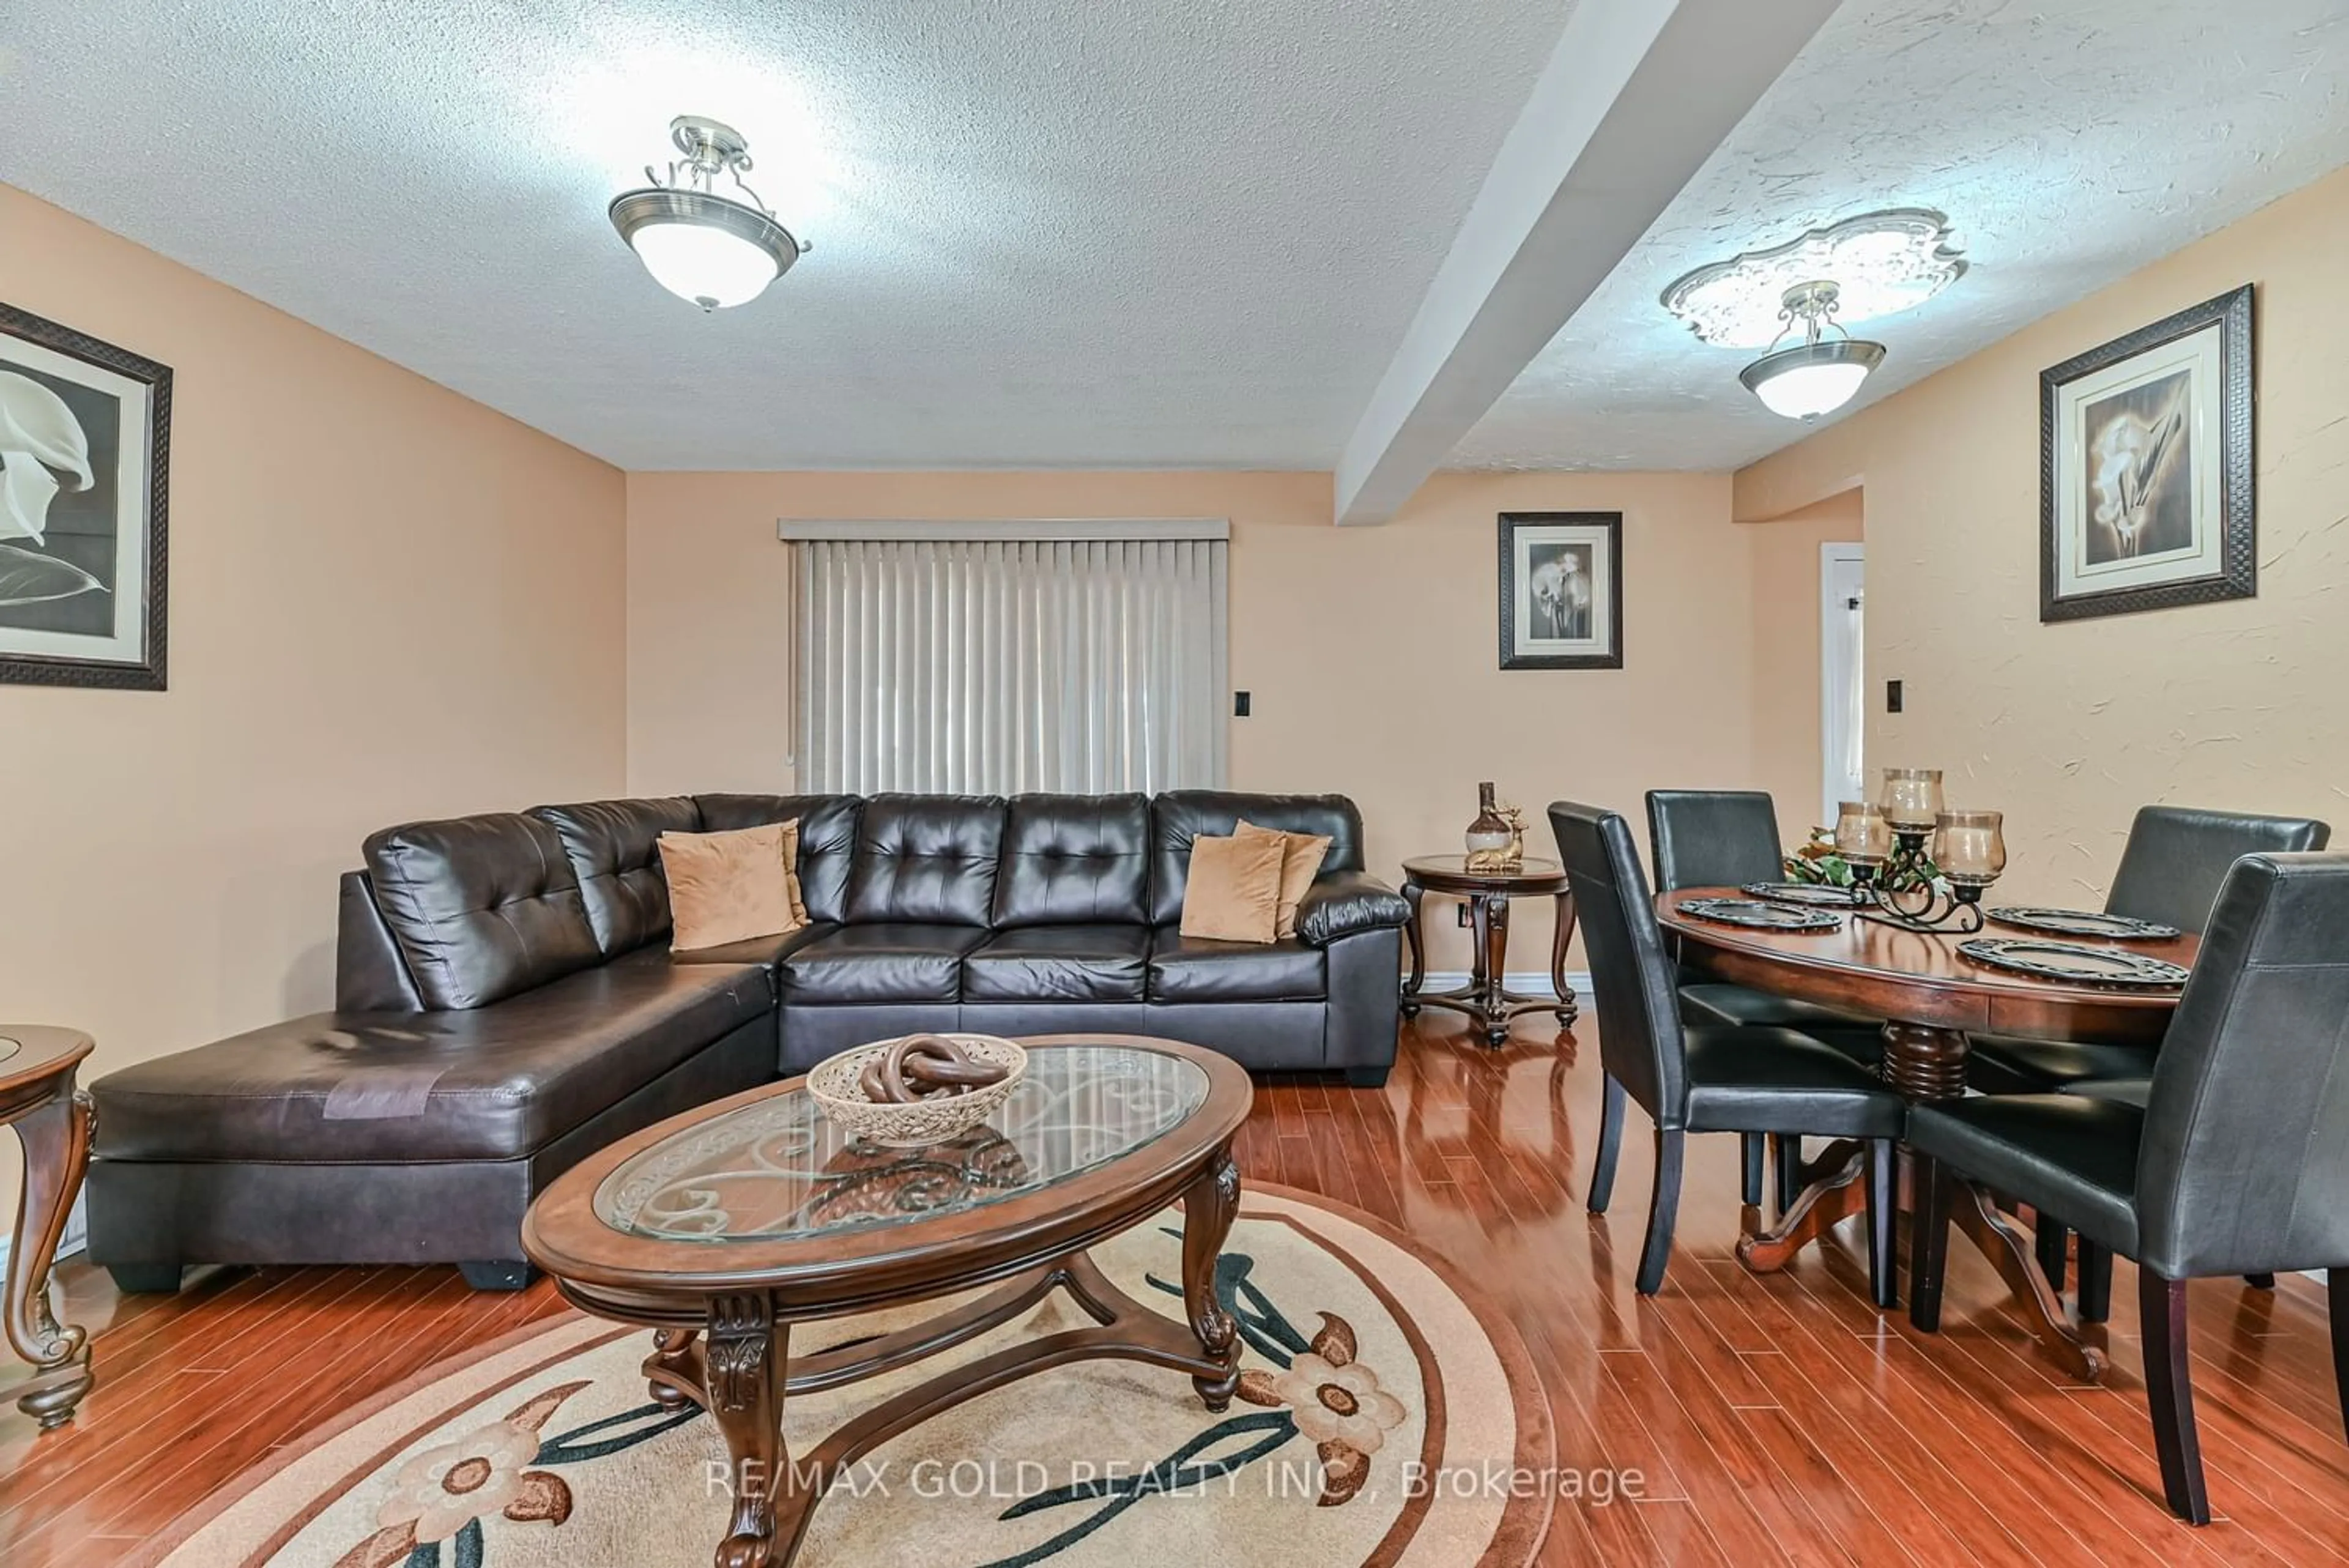 Living room for 21 Hapsburg Sq, Brampton Ontario L6S 1Y7